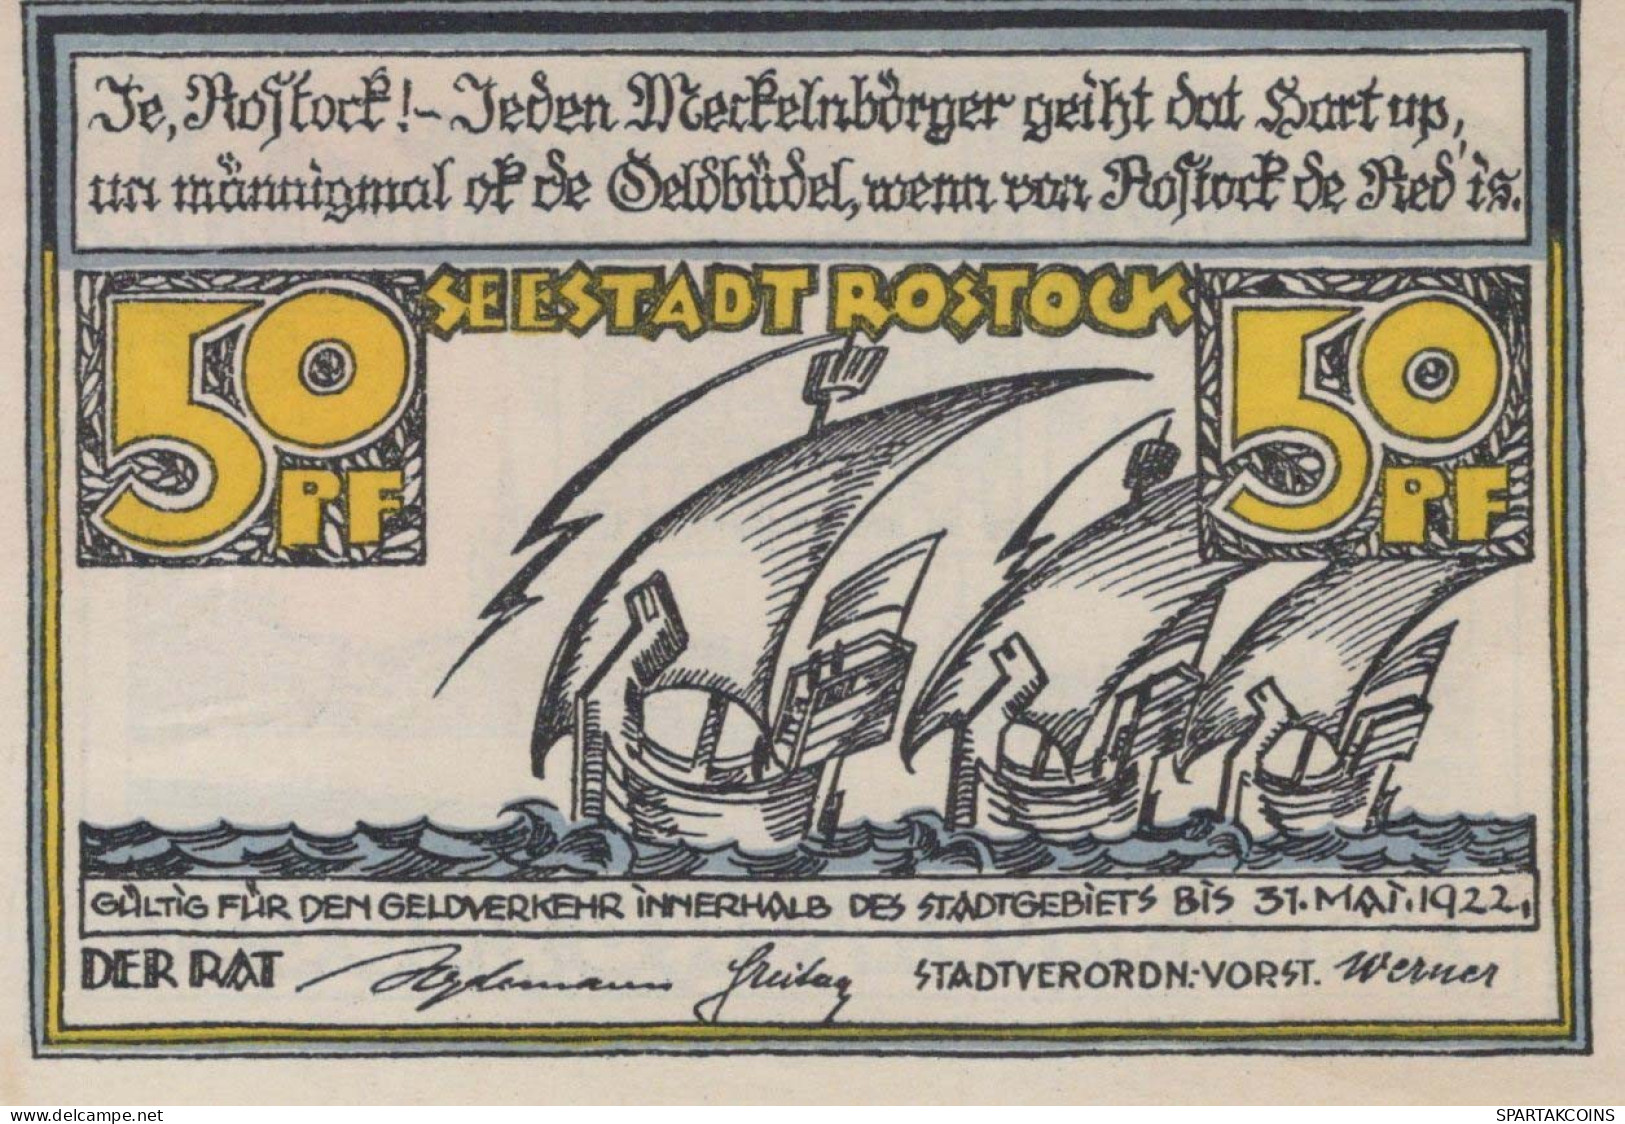 50 PFENNIG 1922 Stadt ROSTOCK Mecklenburg-Schwerin UNC DEUTSCHLAND #PI920 - [11] Local Banknote Issues